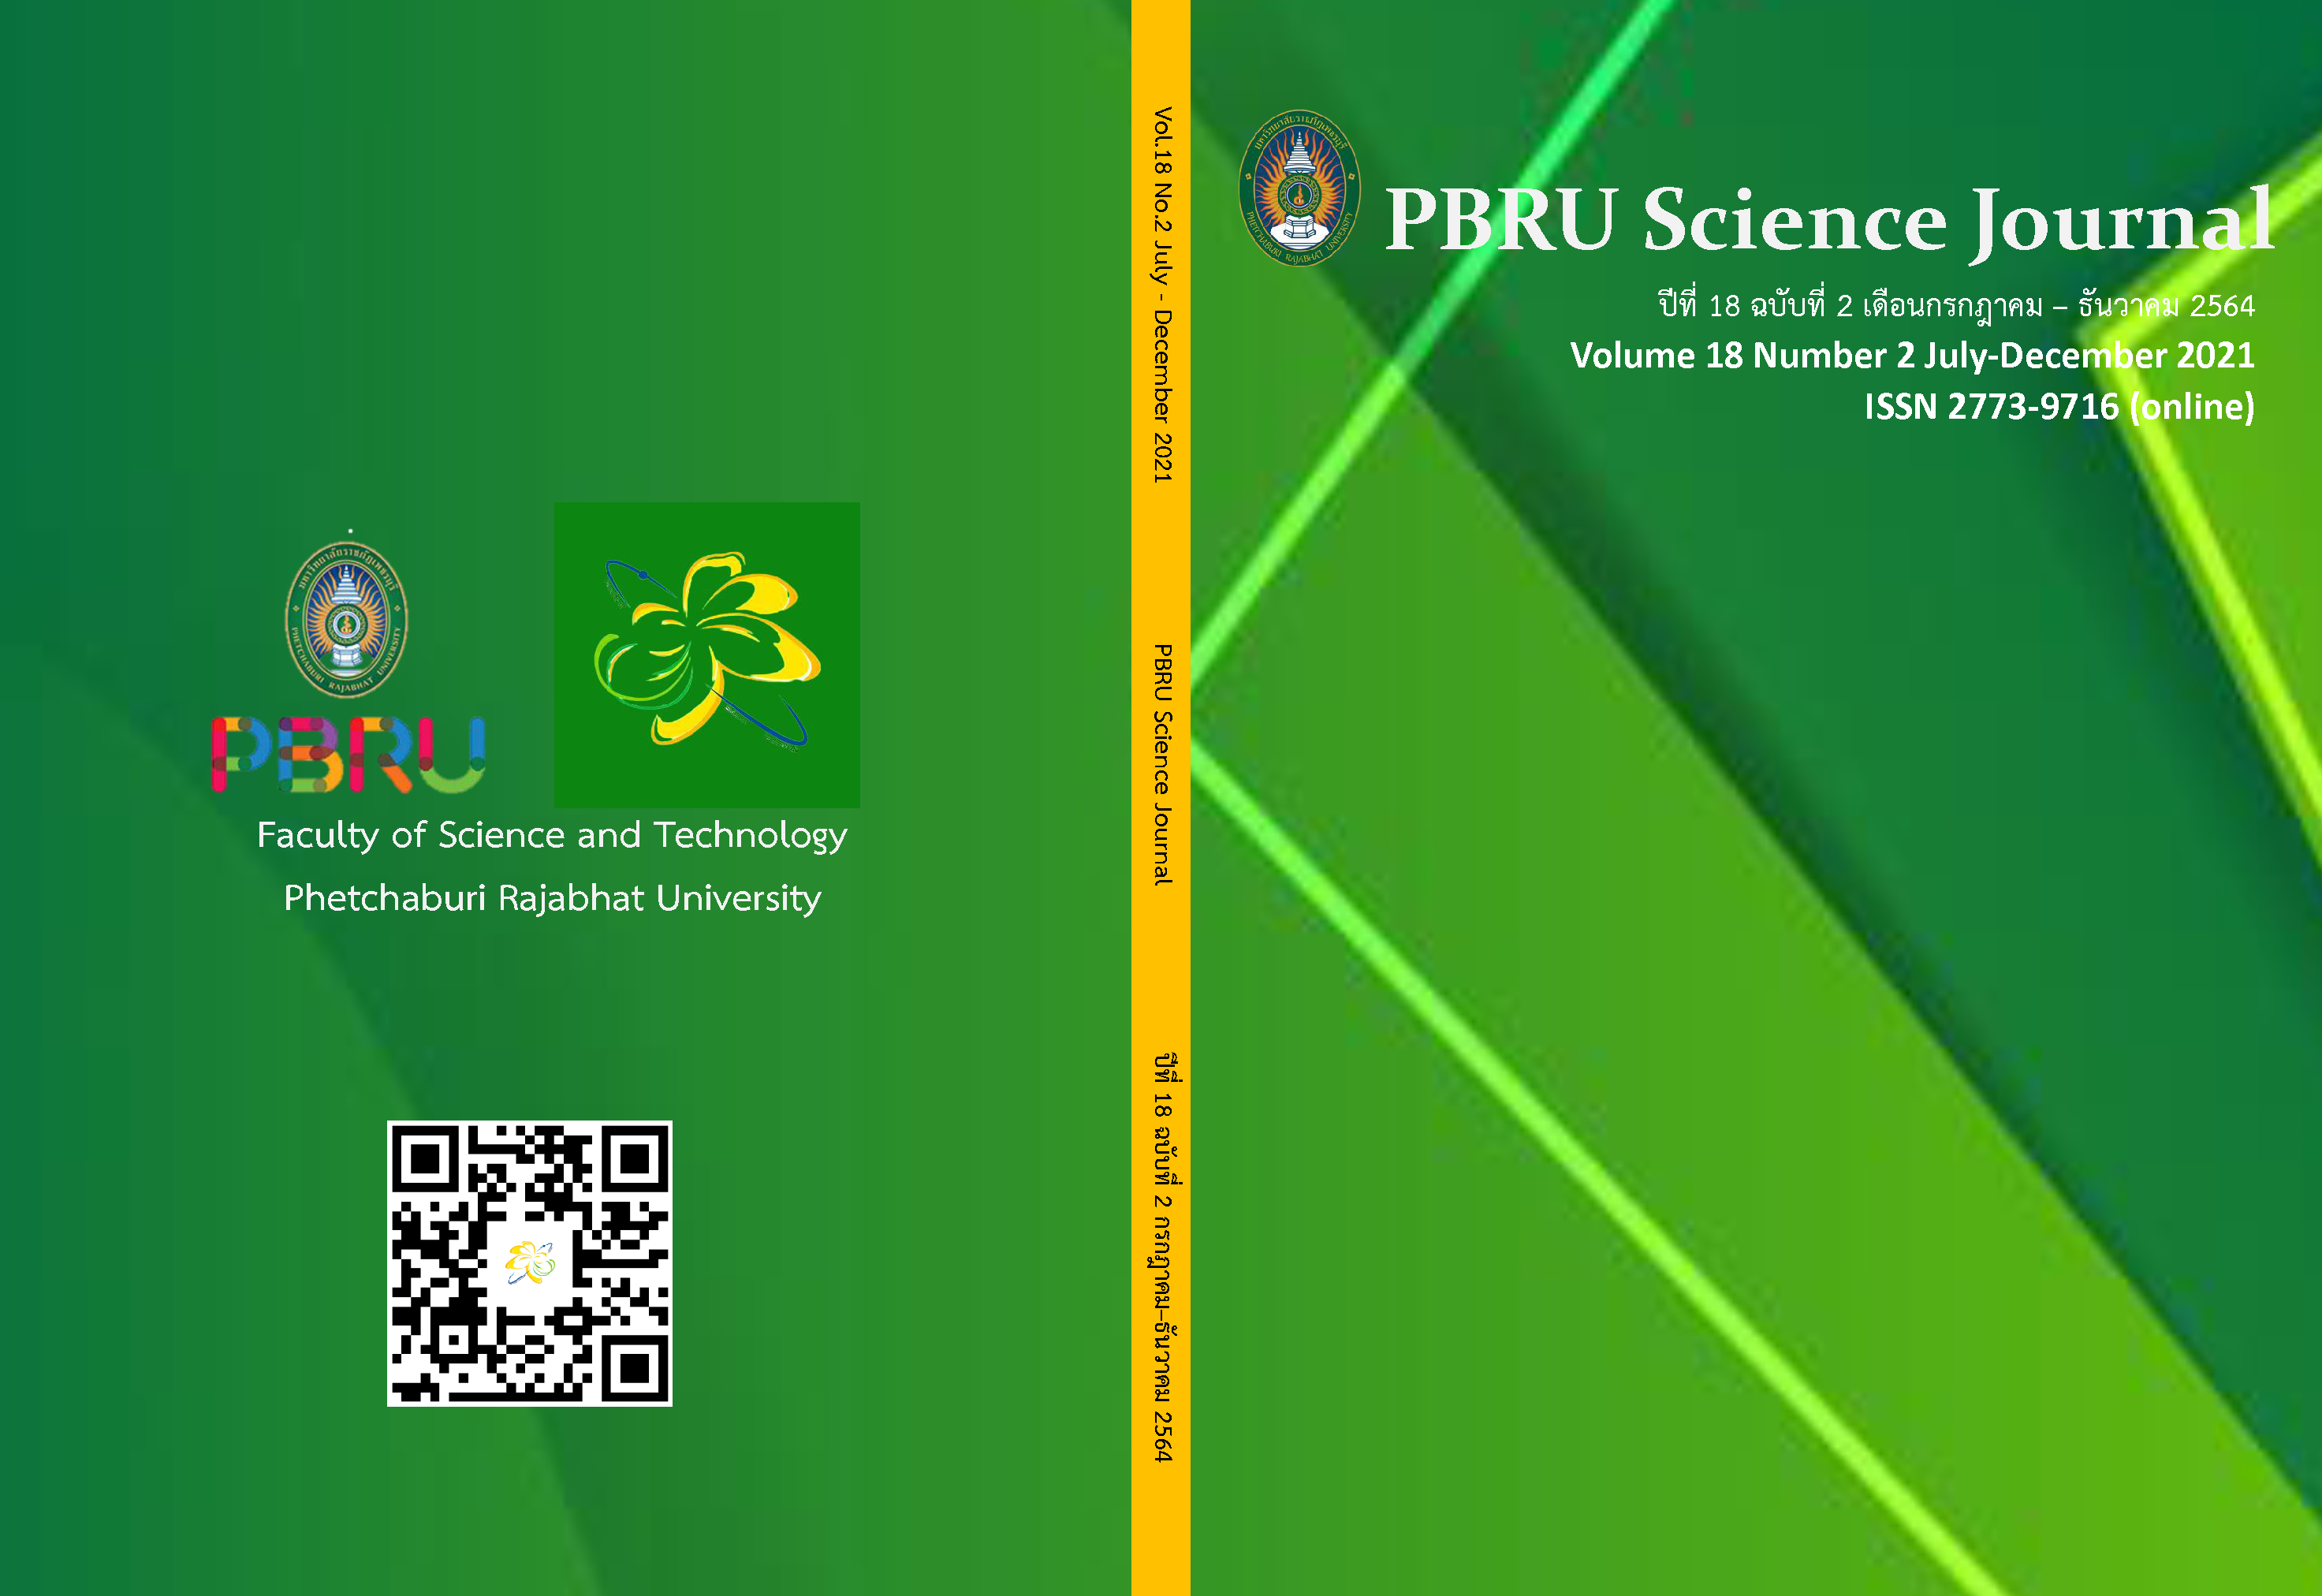 ปกวารสารPBRU Science Journal 18(2)2021